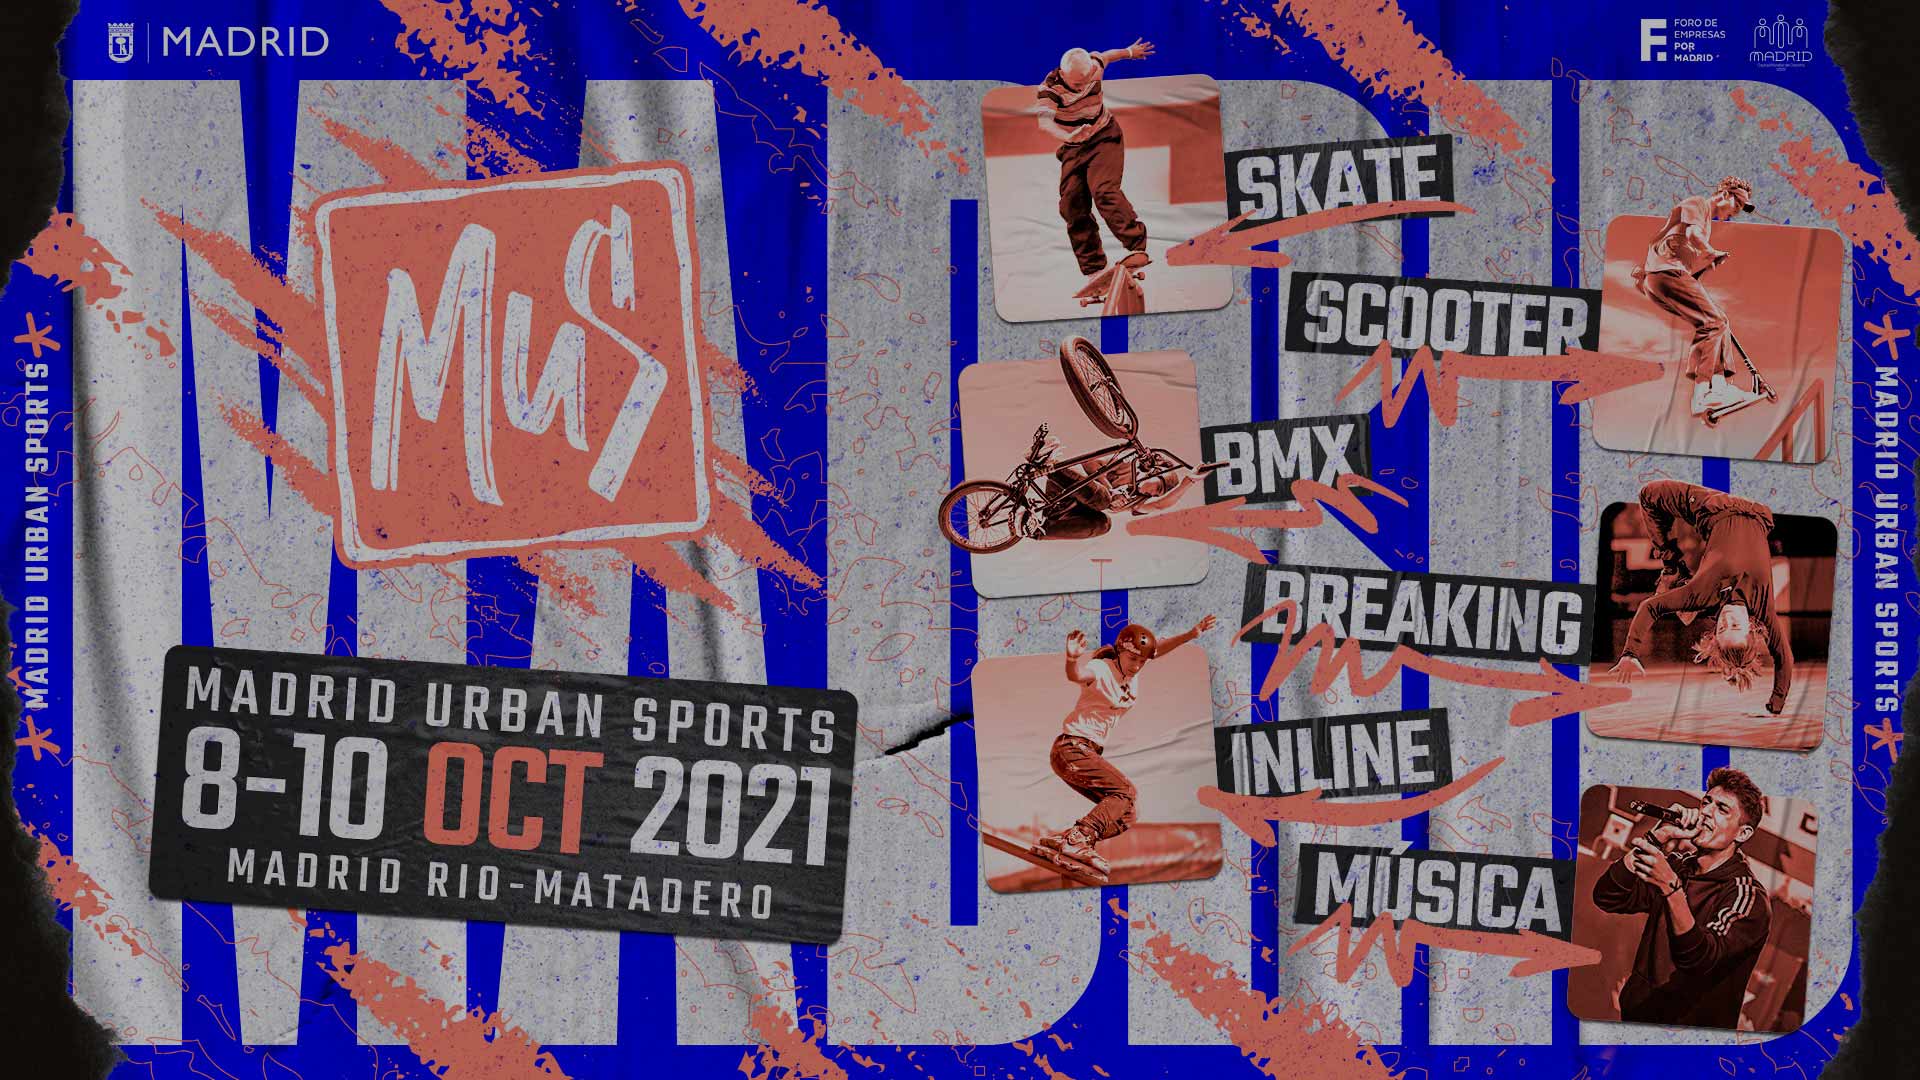 Madrid Urban Sports estará en Matadero durante el segundo fin de semana de octubre / Madrid Urban Sports 